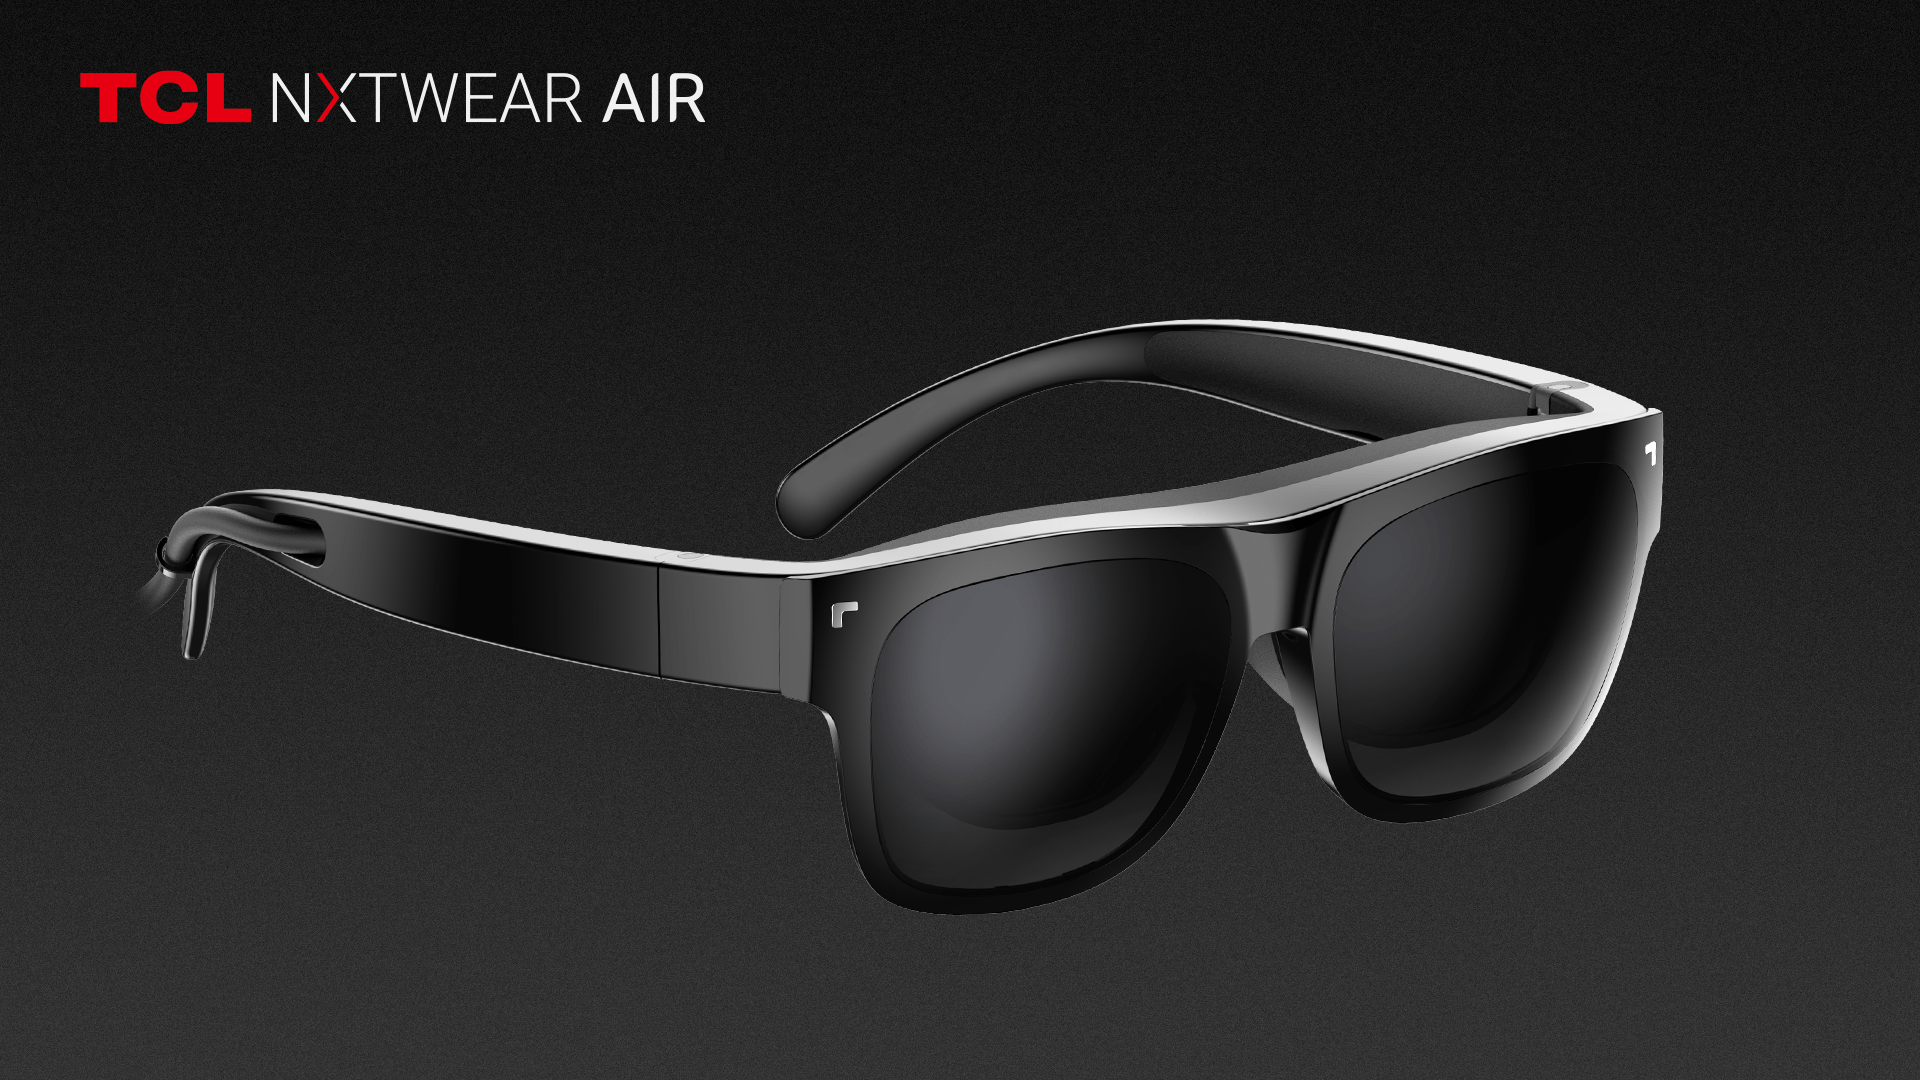 TCL presenta NXTWEAR AIR en el CES 2022, las gafas de visualización portátiles, ligeras y personales